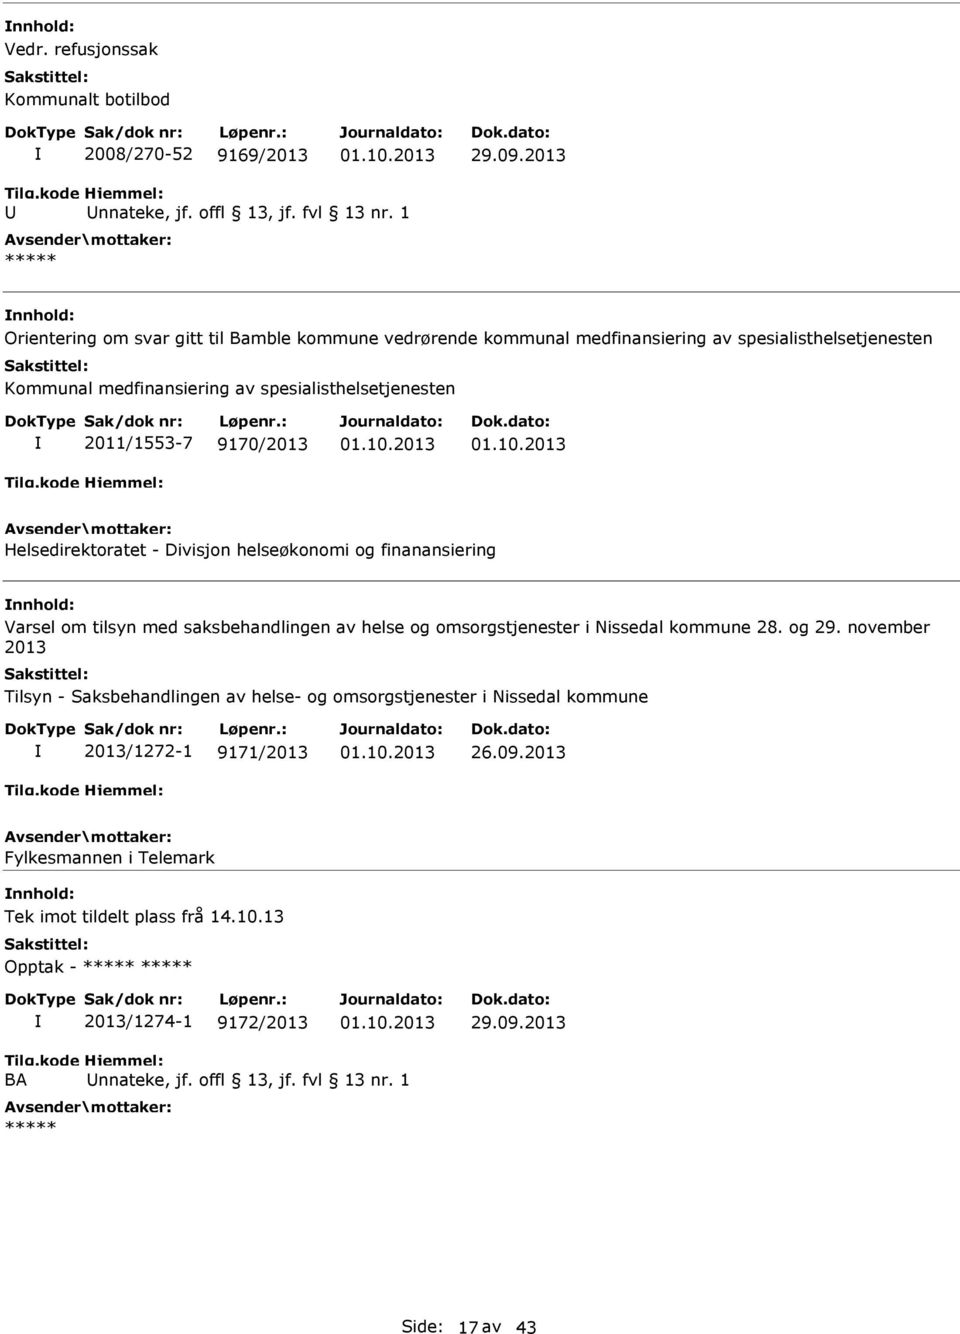 9170/2013 Helsedirektoratet - Divisjon helseøkonomi og finanansiering Varsel om tilsyn med saksbehandlingen av helse og omsorgstjenester i Nissedal kommune 28. og 29.